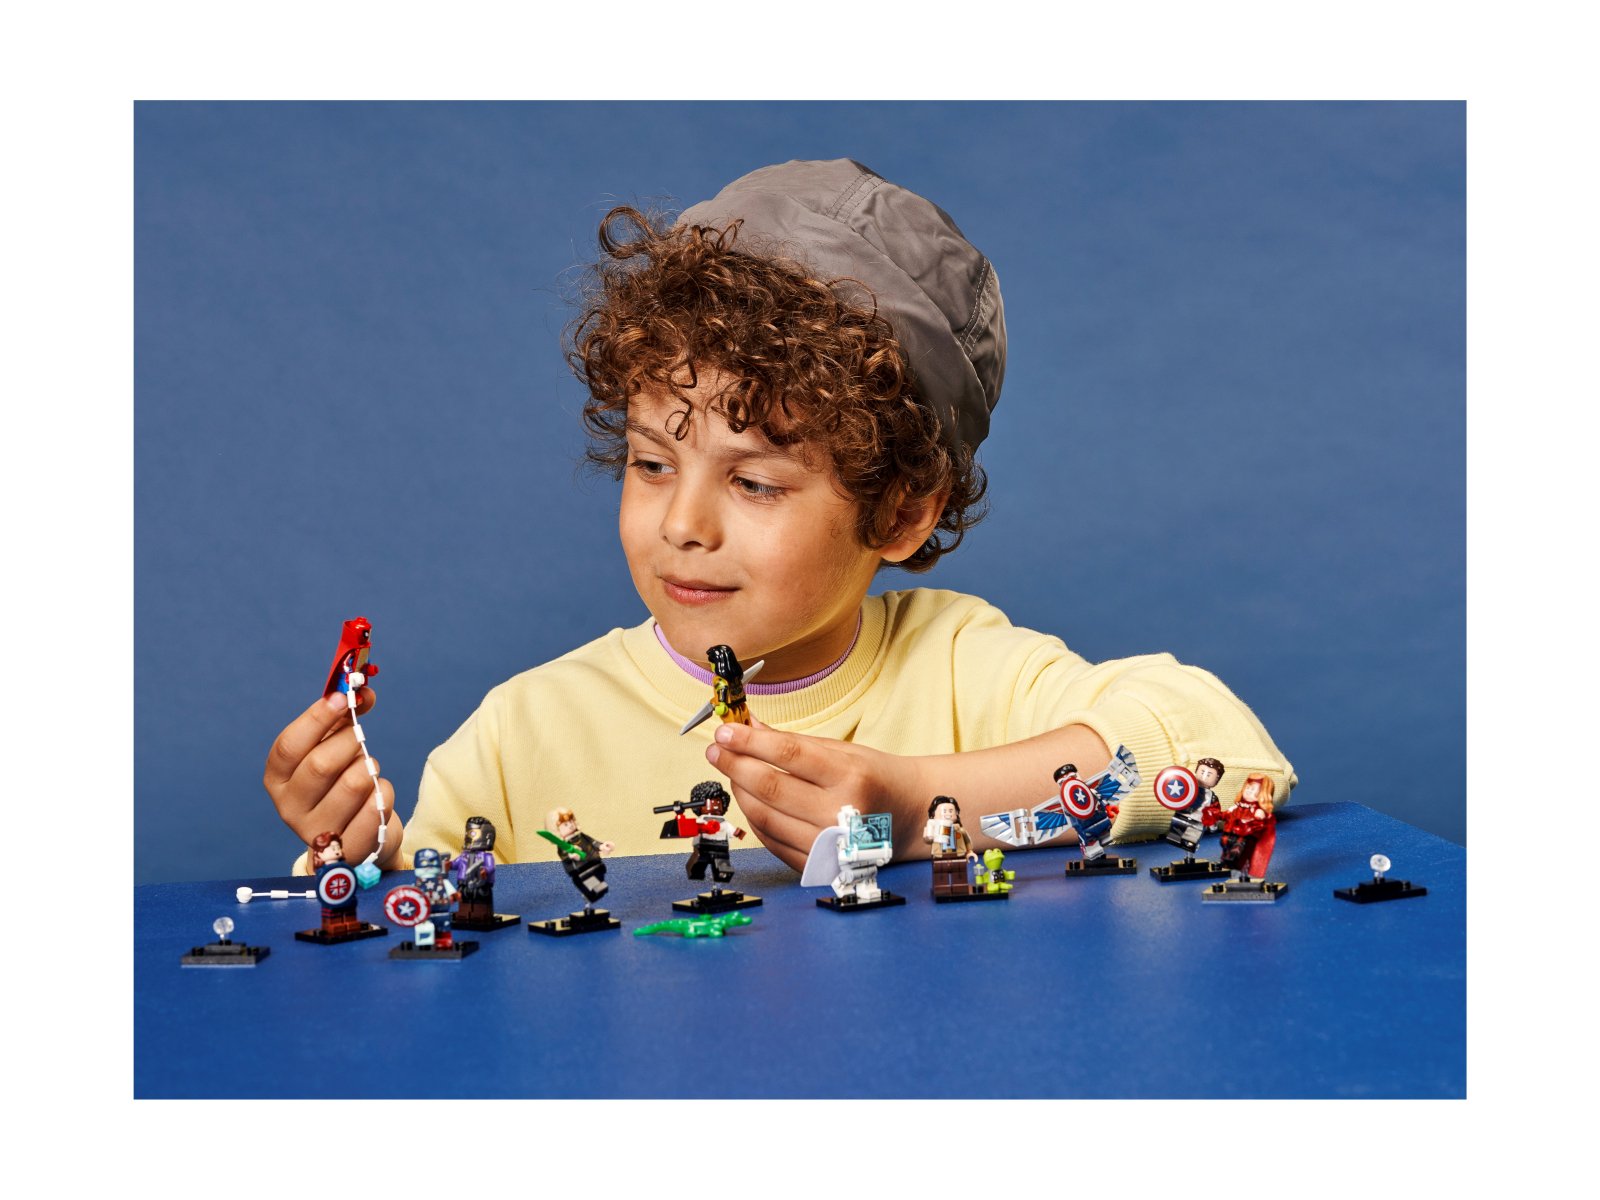 LEGO 66678 Minifigures Marvel Studios — sześciopak